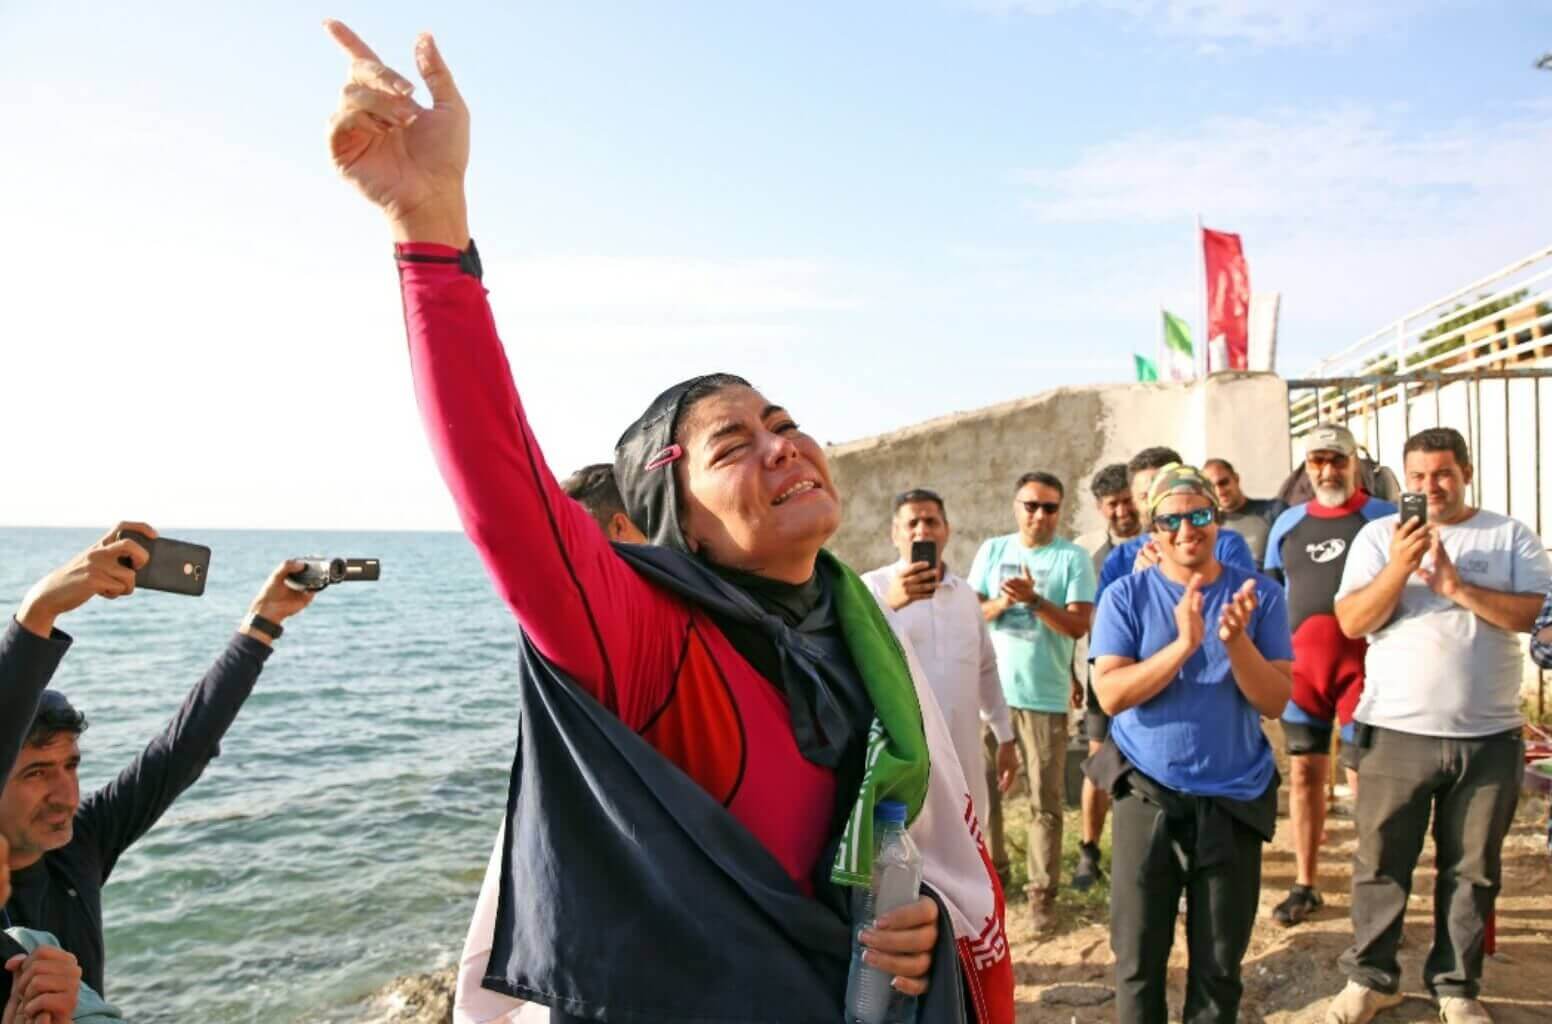 ثبت رکورد جهانی شنا با یک دست بسته به نام بانوی ایرانی